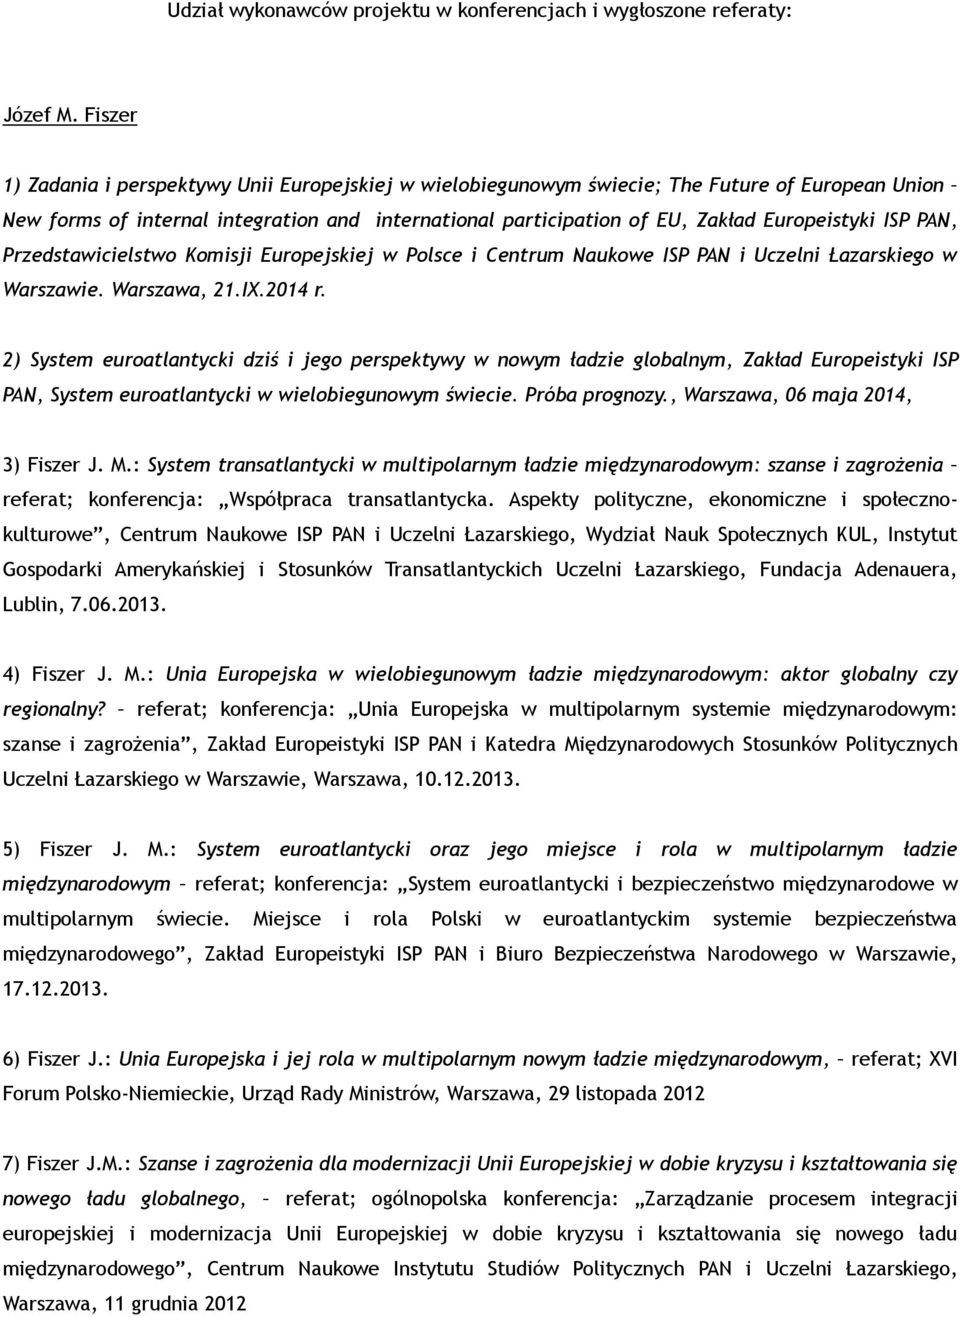 ISP PAN, Przedstawicielstwo Komisji Europejskiej w Polsce i Centrum Naukowe ISP PAN i Uczelni Łazarskiego w Warszawie. Warszawa, 21.IX.2014 r.